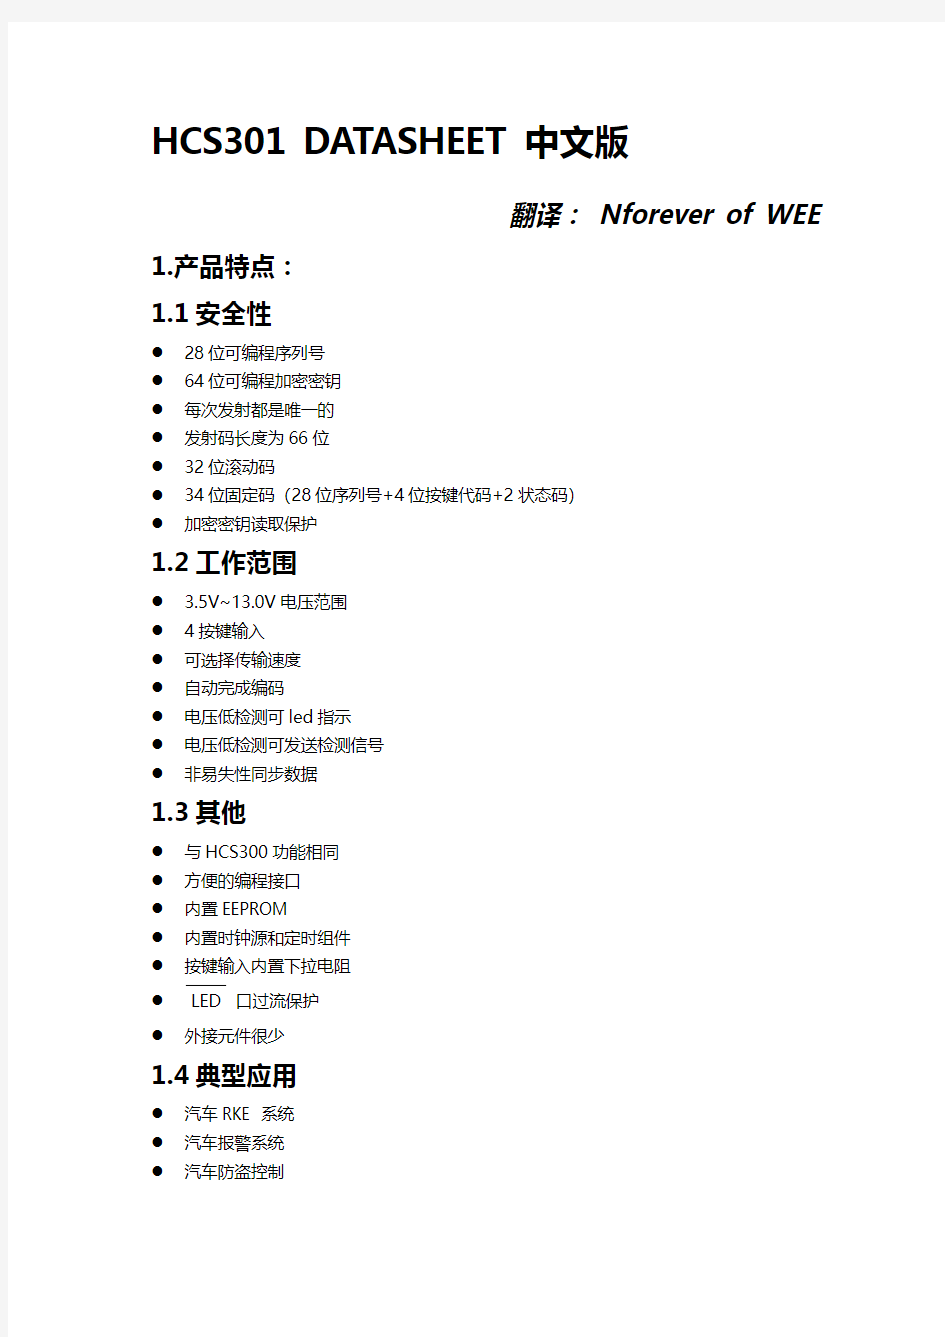 HCS301中文文档